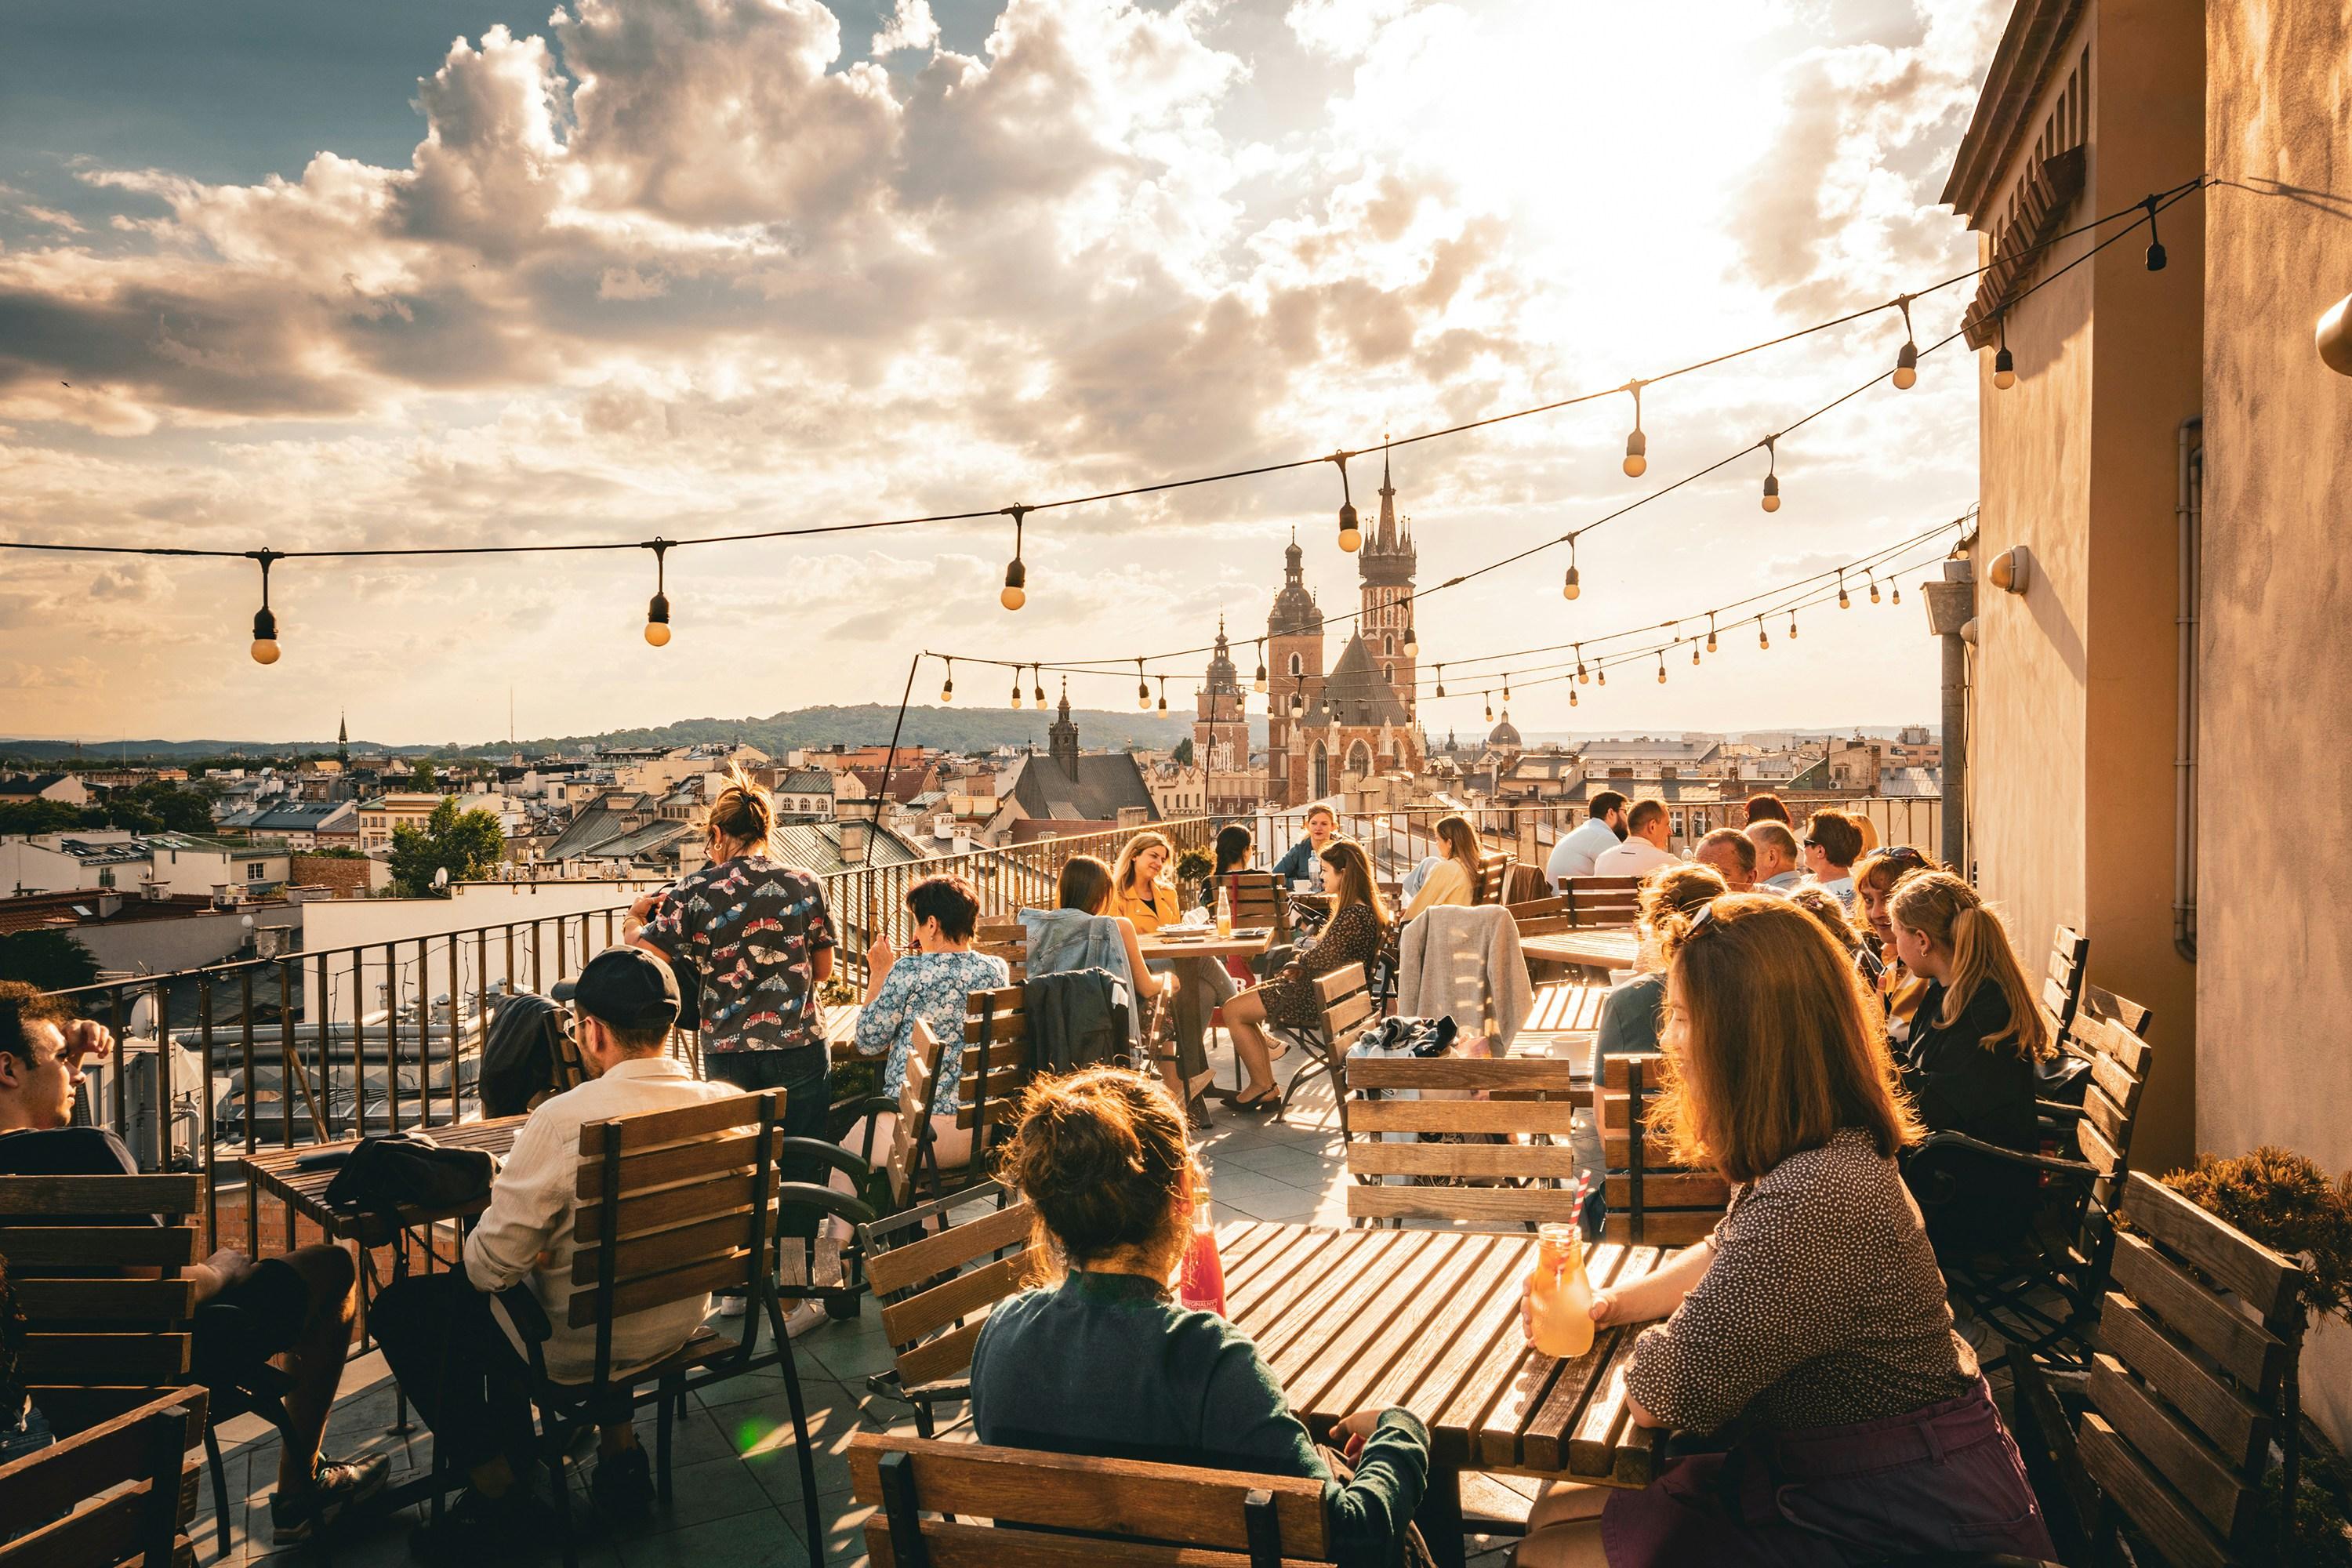 Koszty życia w Krakowie - ile zapłacisz za życie w tym mieście? Post Image itMatch